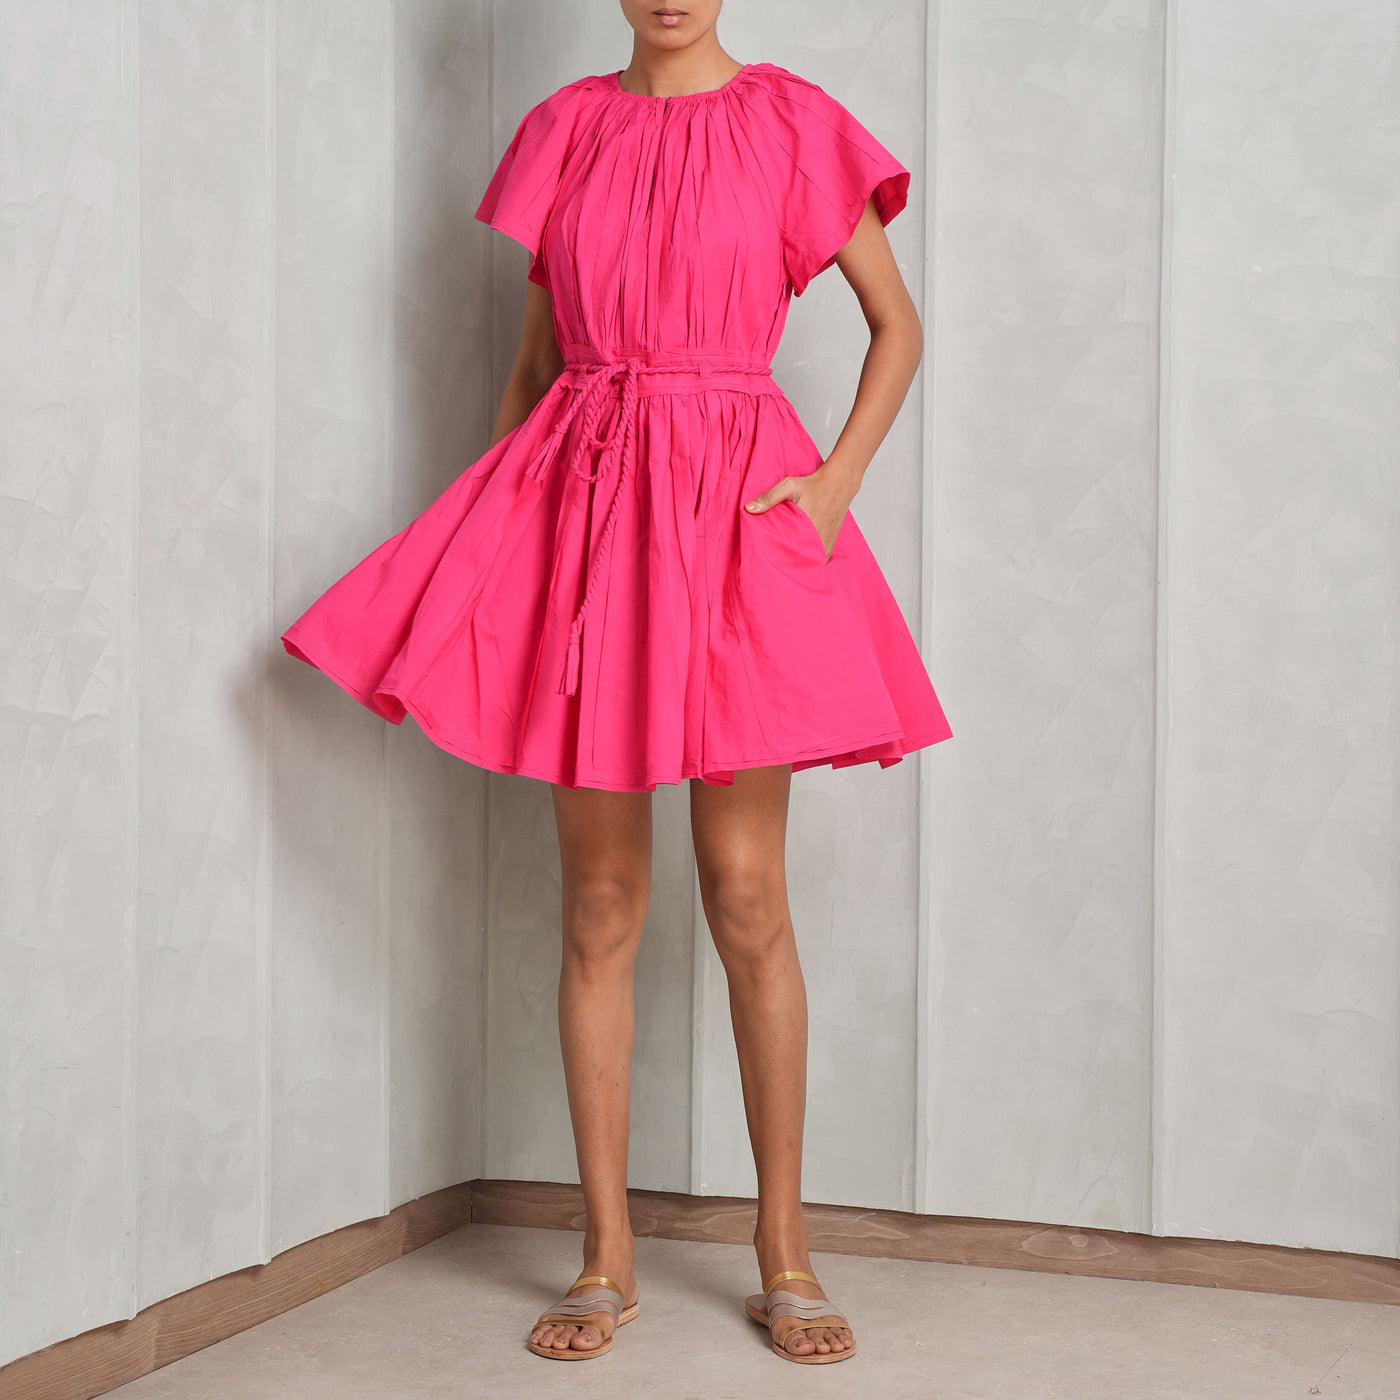 ULLA JOHNSON Jessa mini pink dress